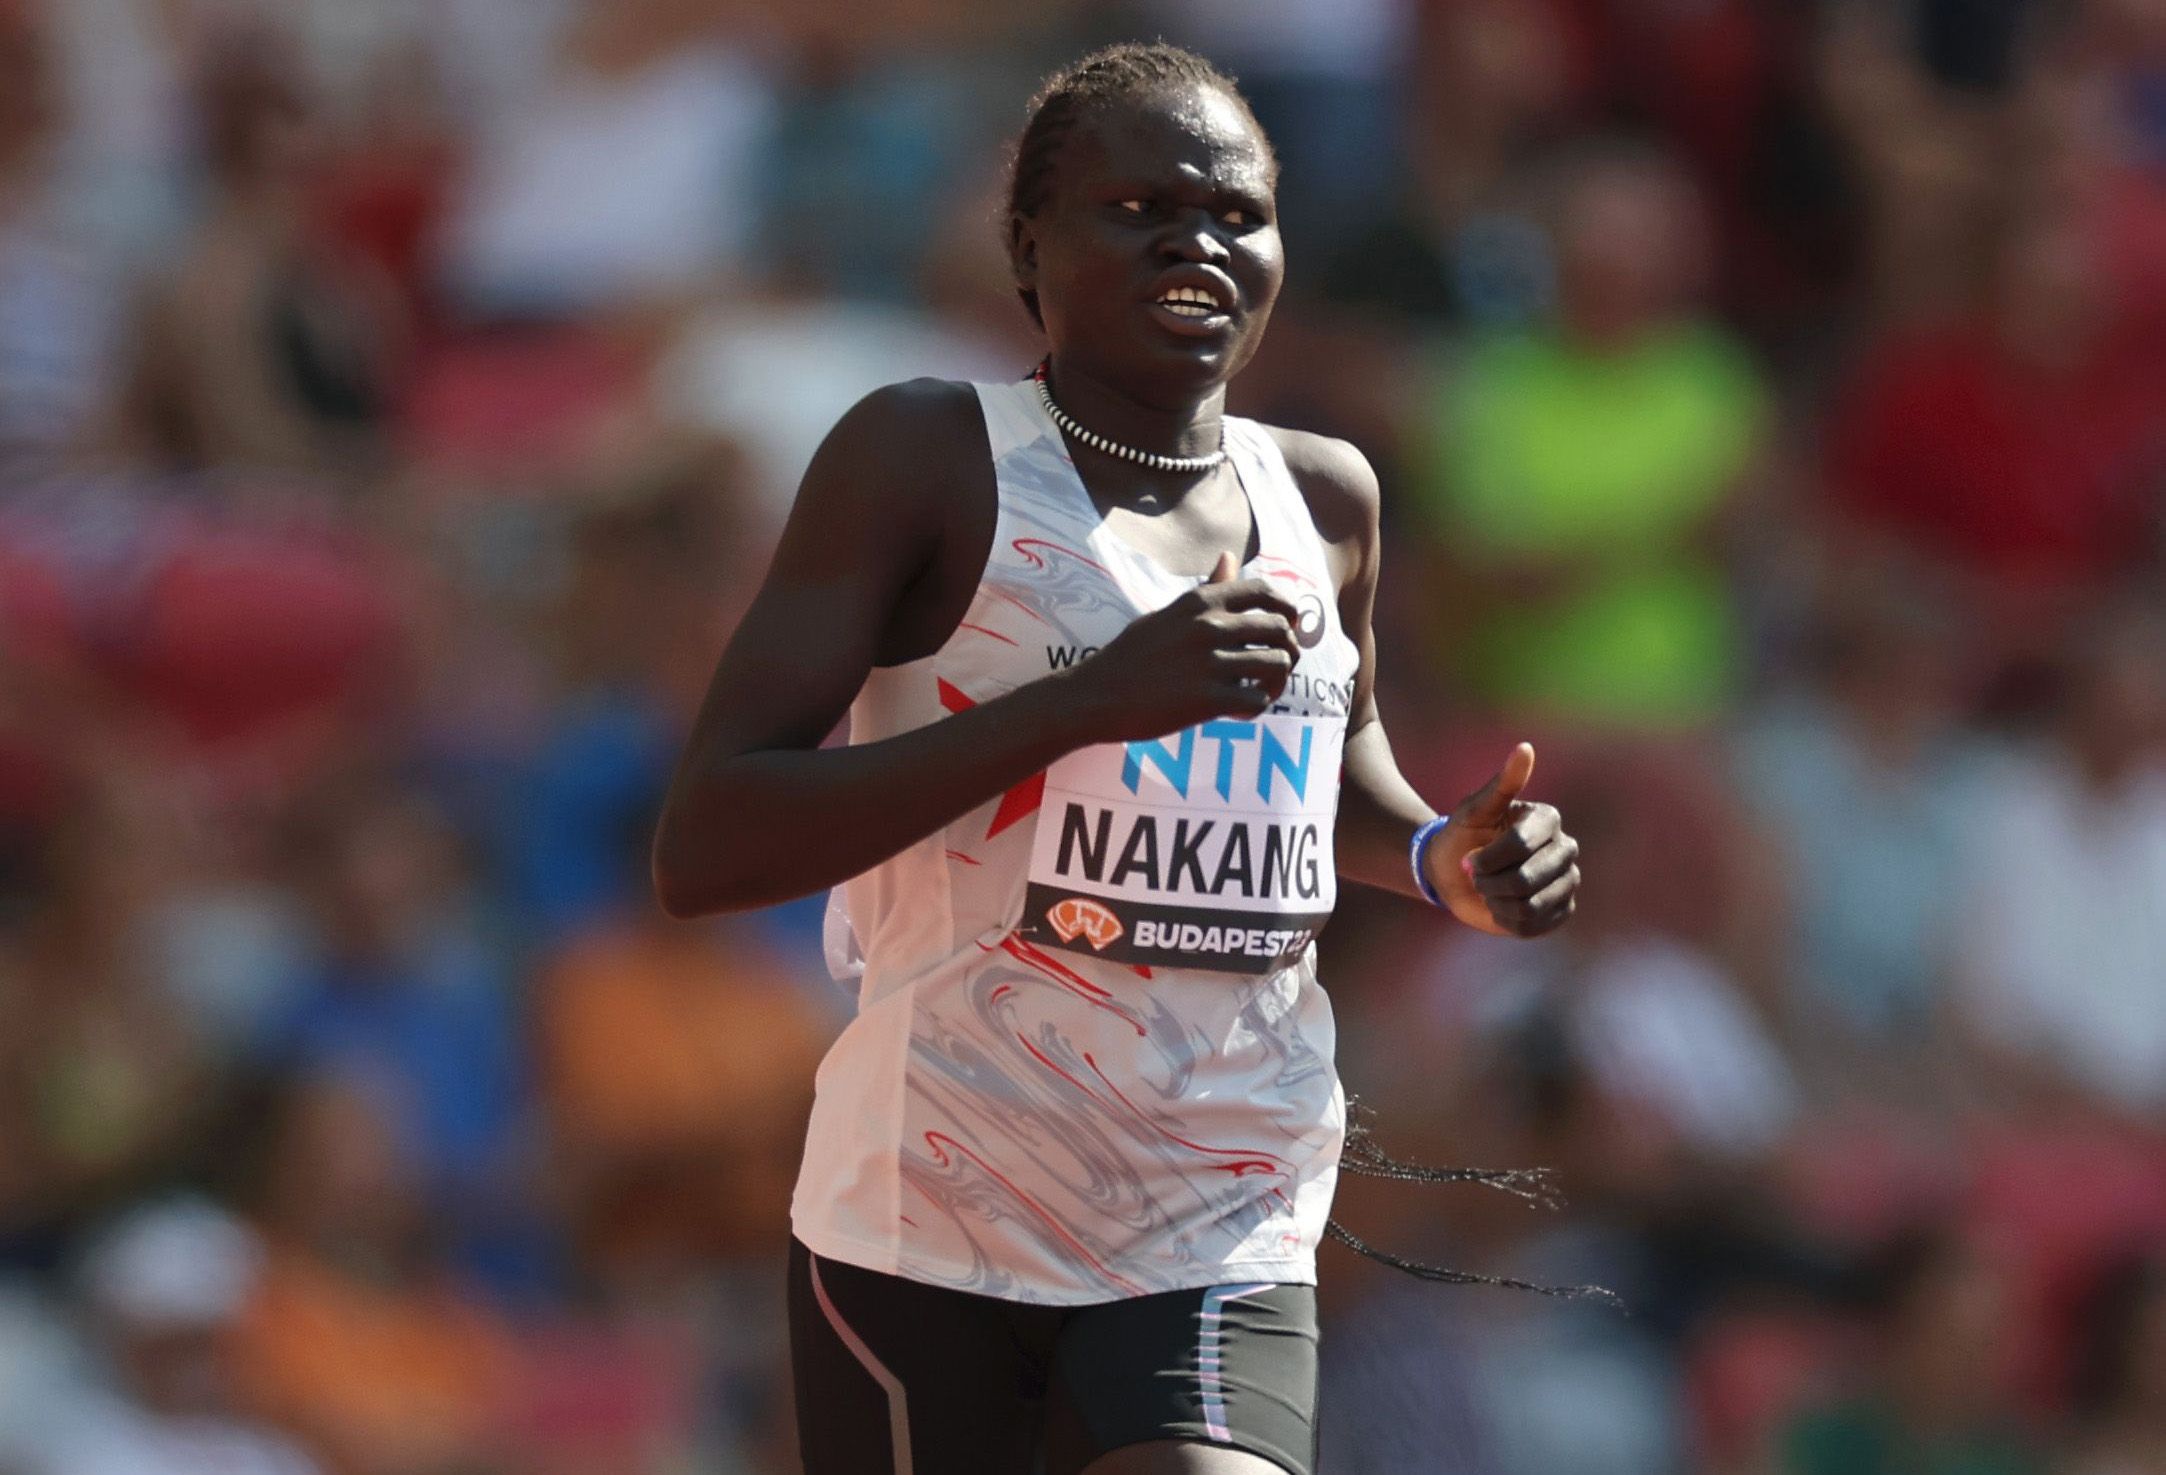 Perina Lokure Nakang at the World Athletics Championships Budapest 23